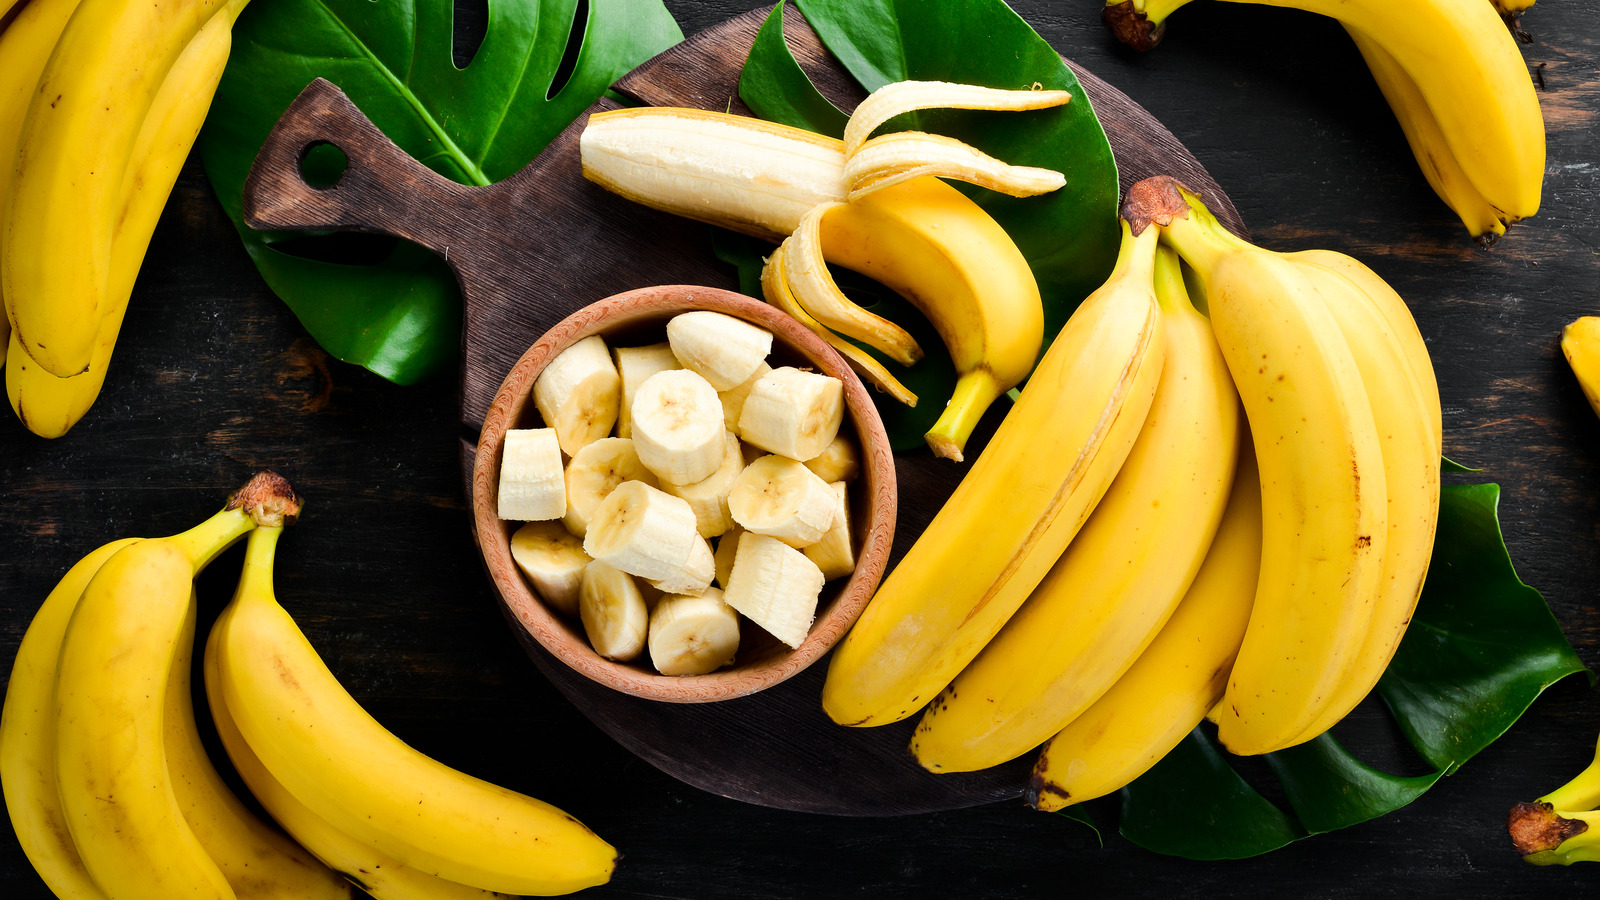 Là loại trái cây bán đầy ở chợ Việt nhưng không ngờ chuối lại có công dụng tuyệt vời cho nhiều vấn đề sức khỏe, điển hình là bệnh tiểu đường-2